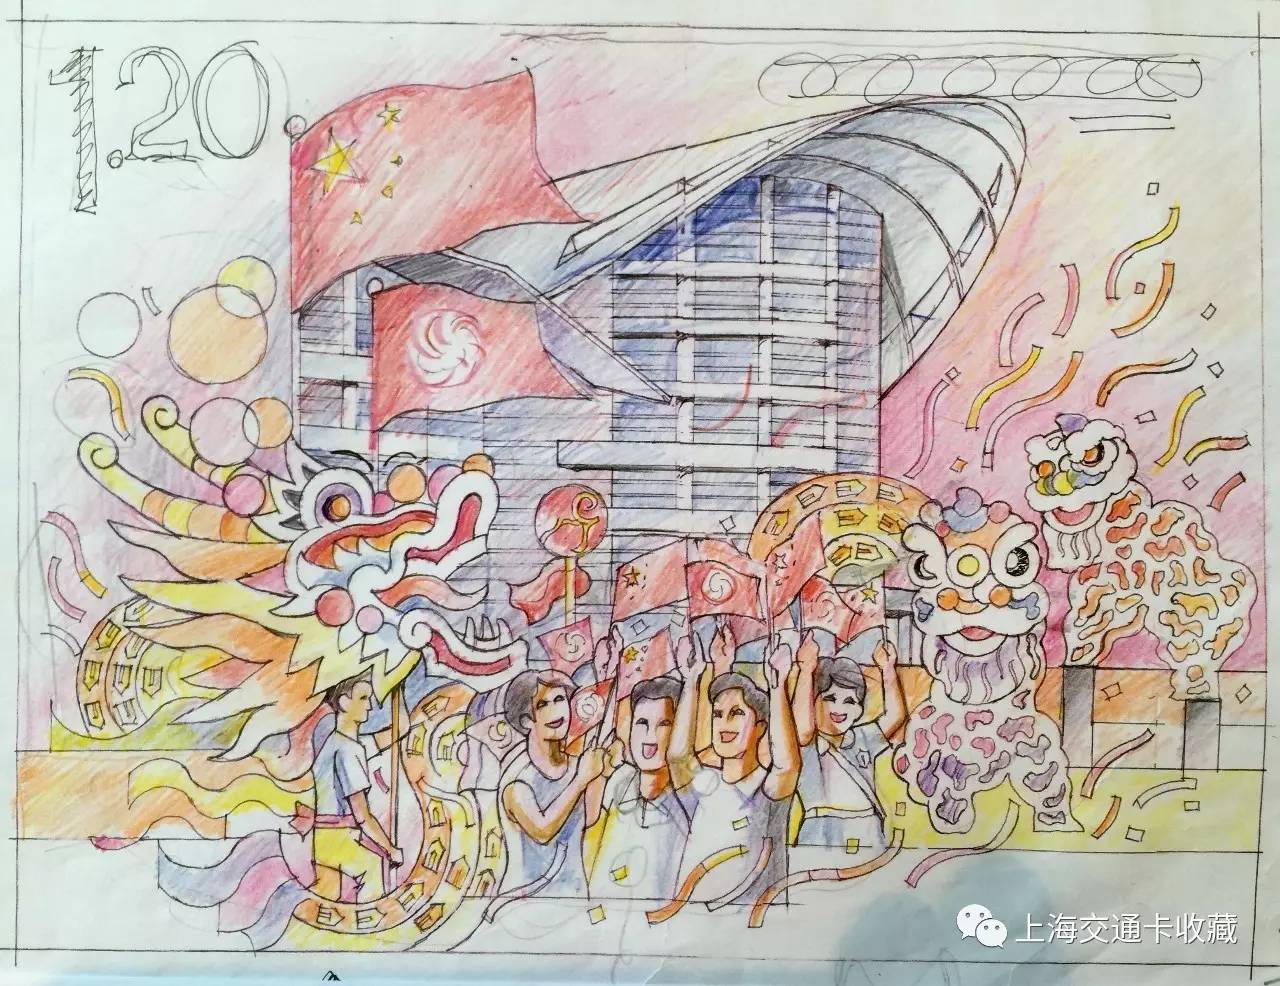 为纪念香港回归祖国20周年,中国邮政将于7月1日发行一套《香港回归